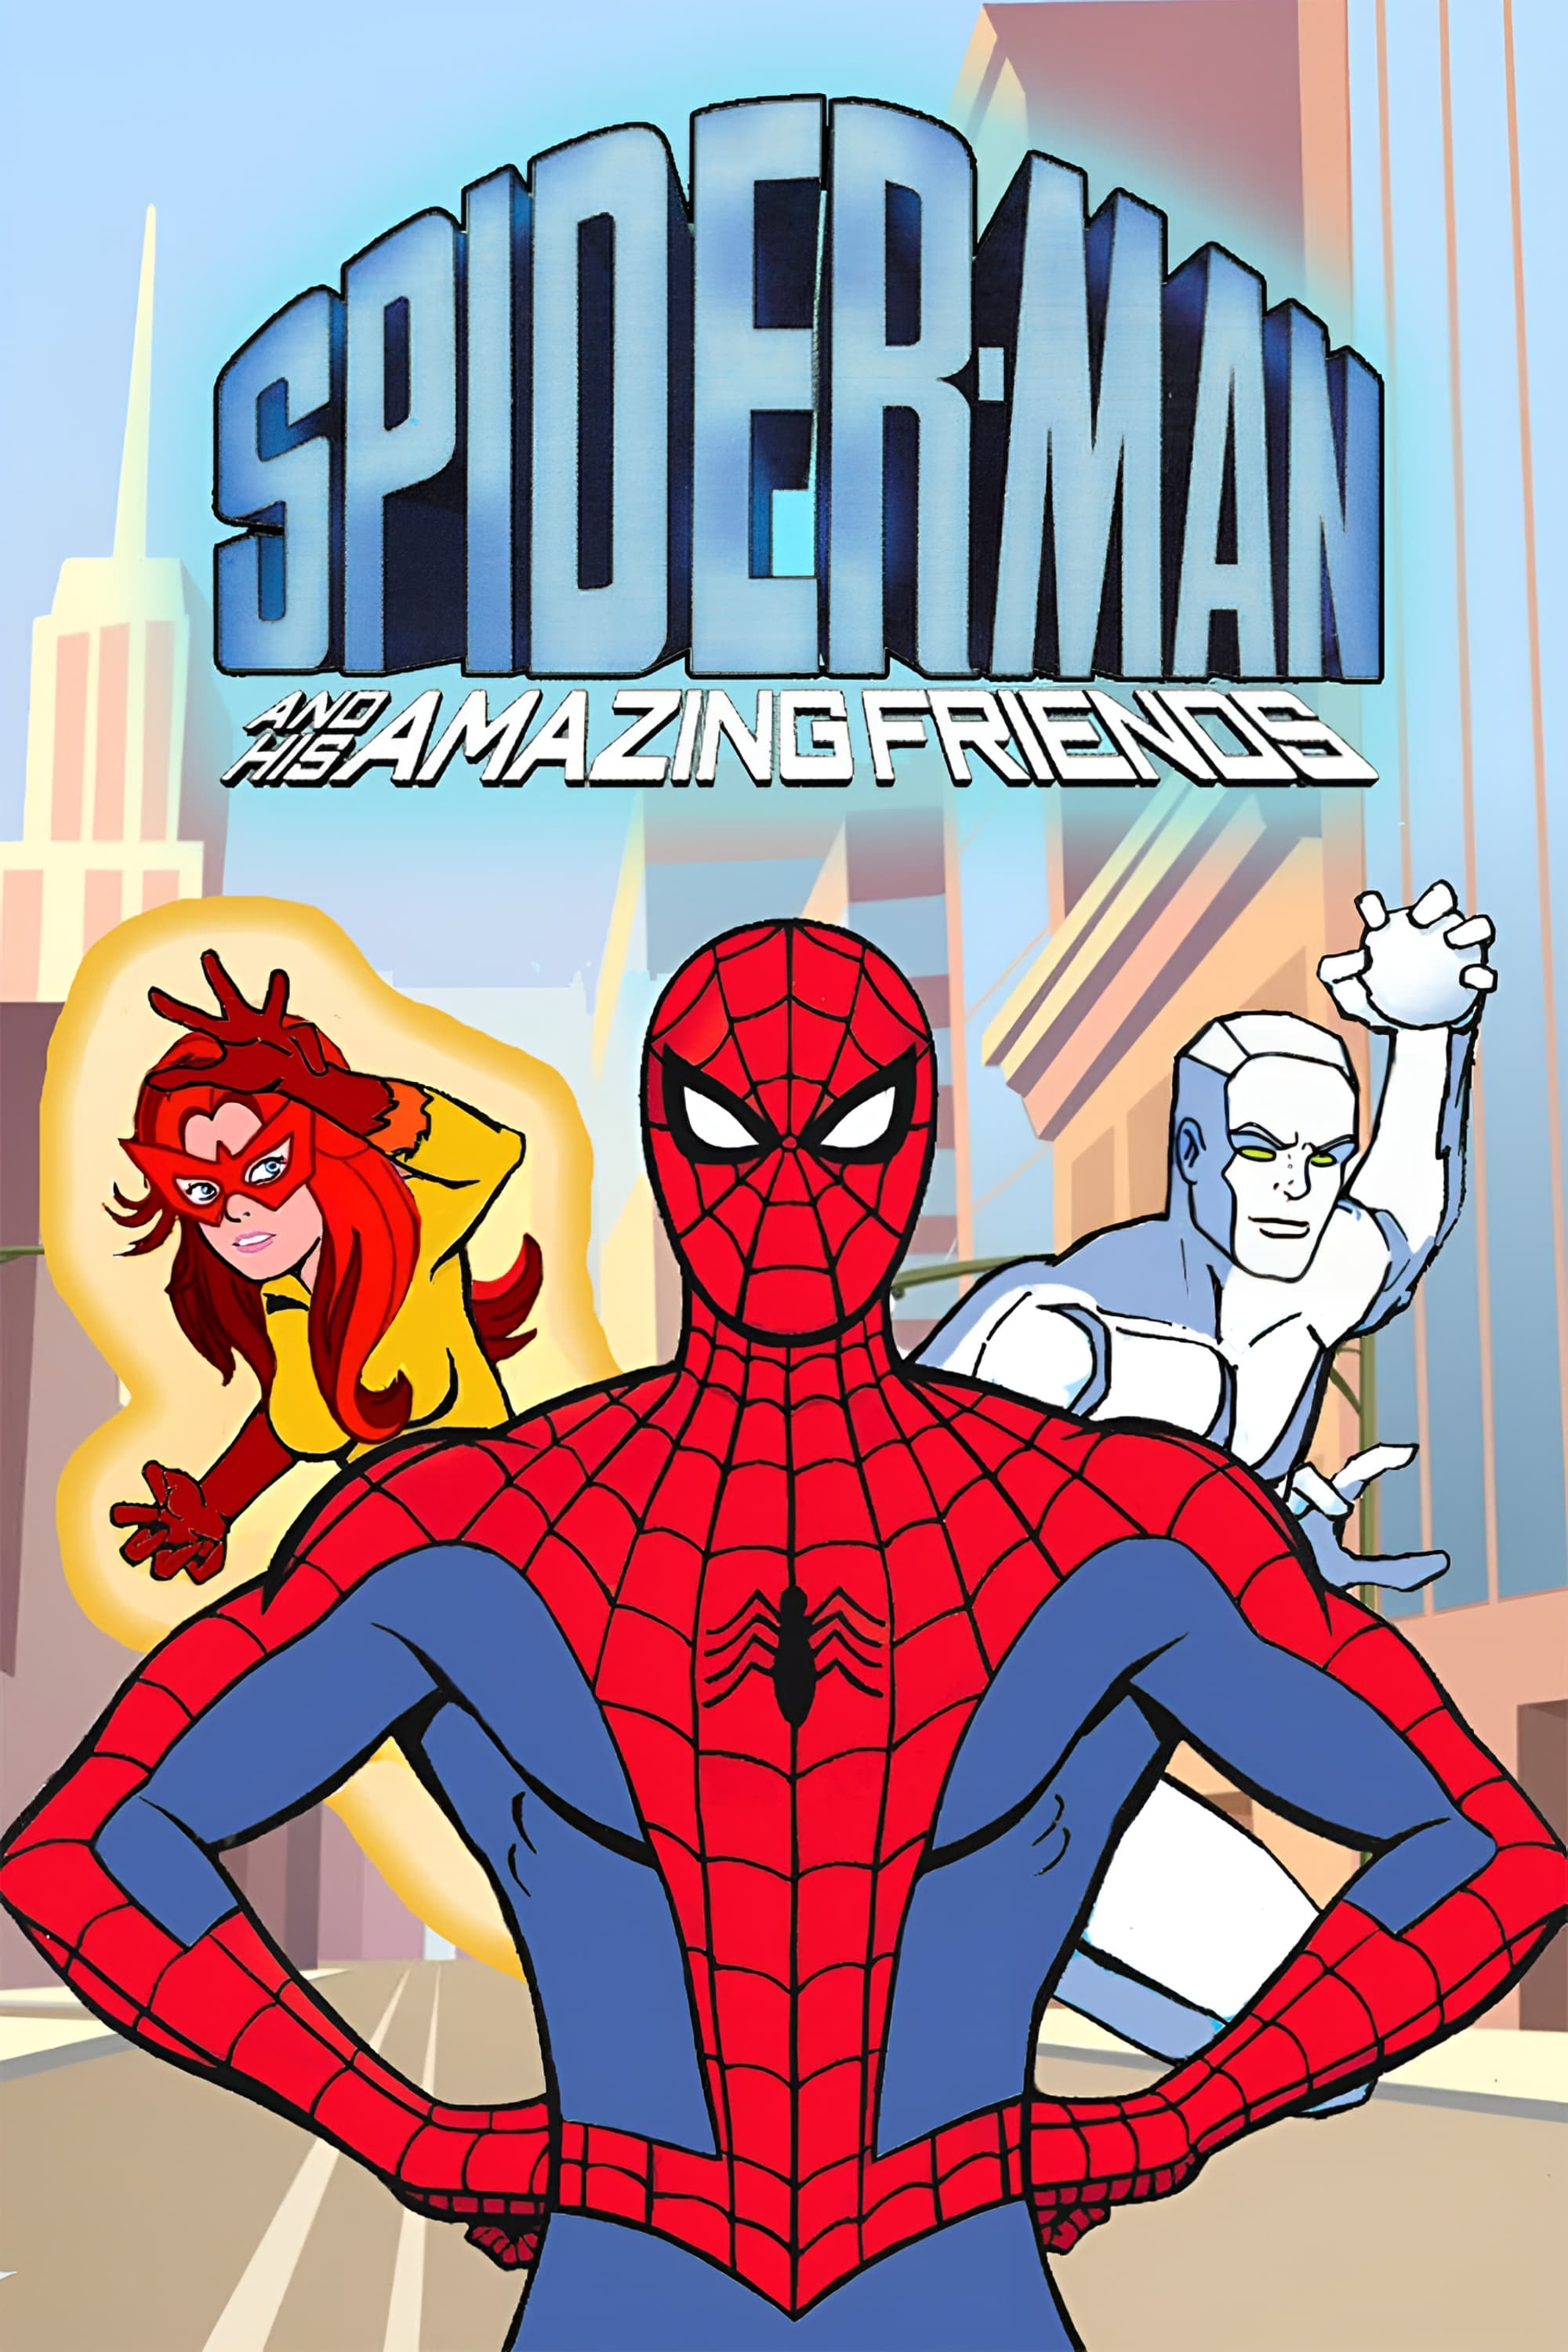 Spider-Man et Ses Amis Exceptionnels